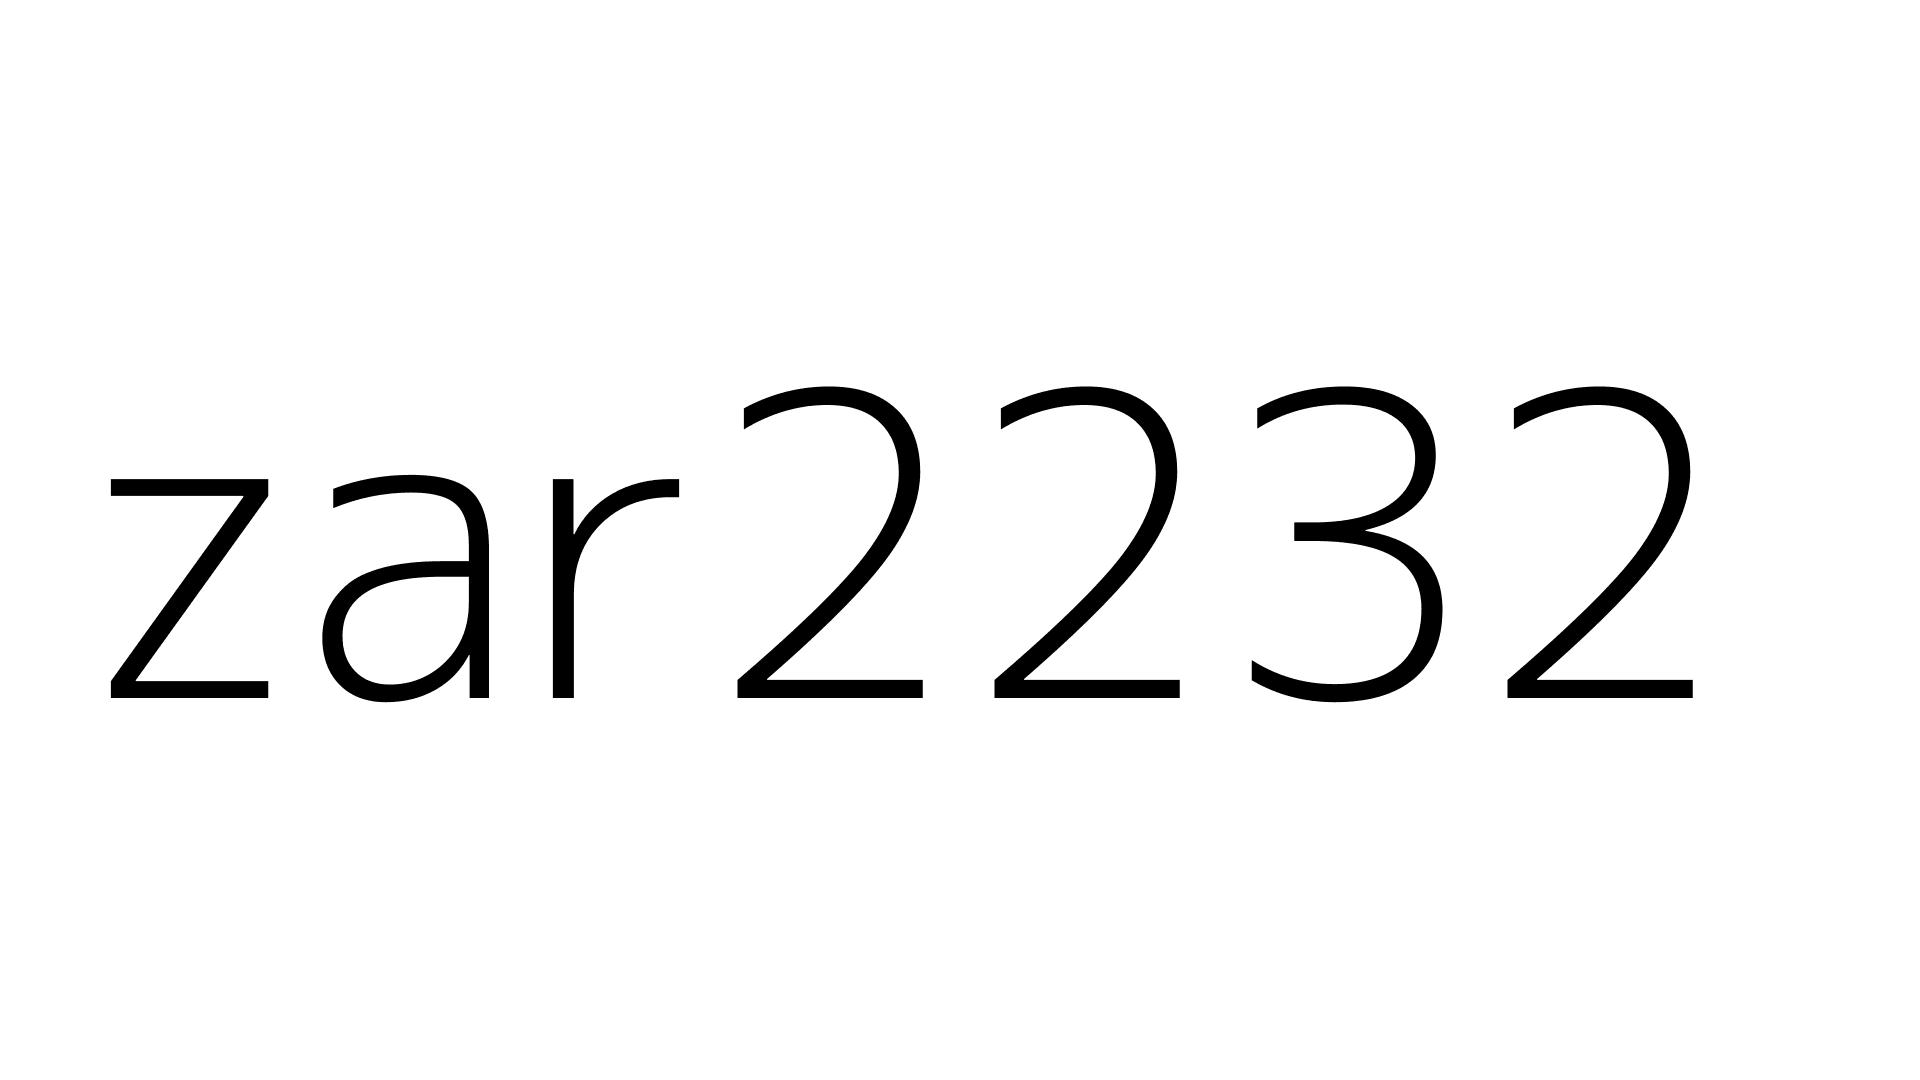 zar2232